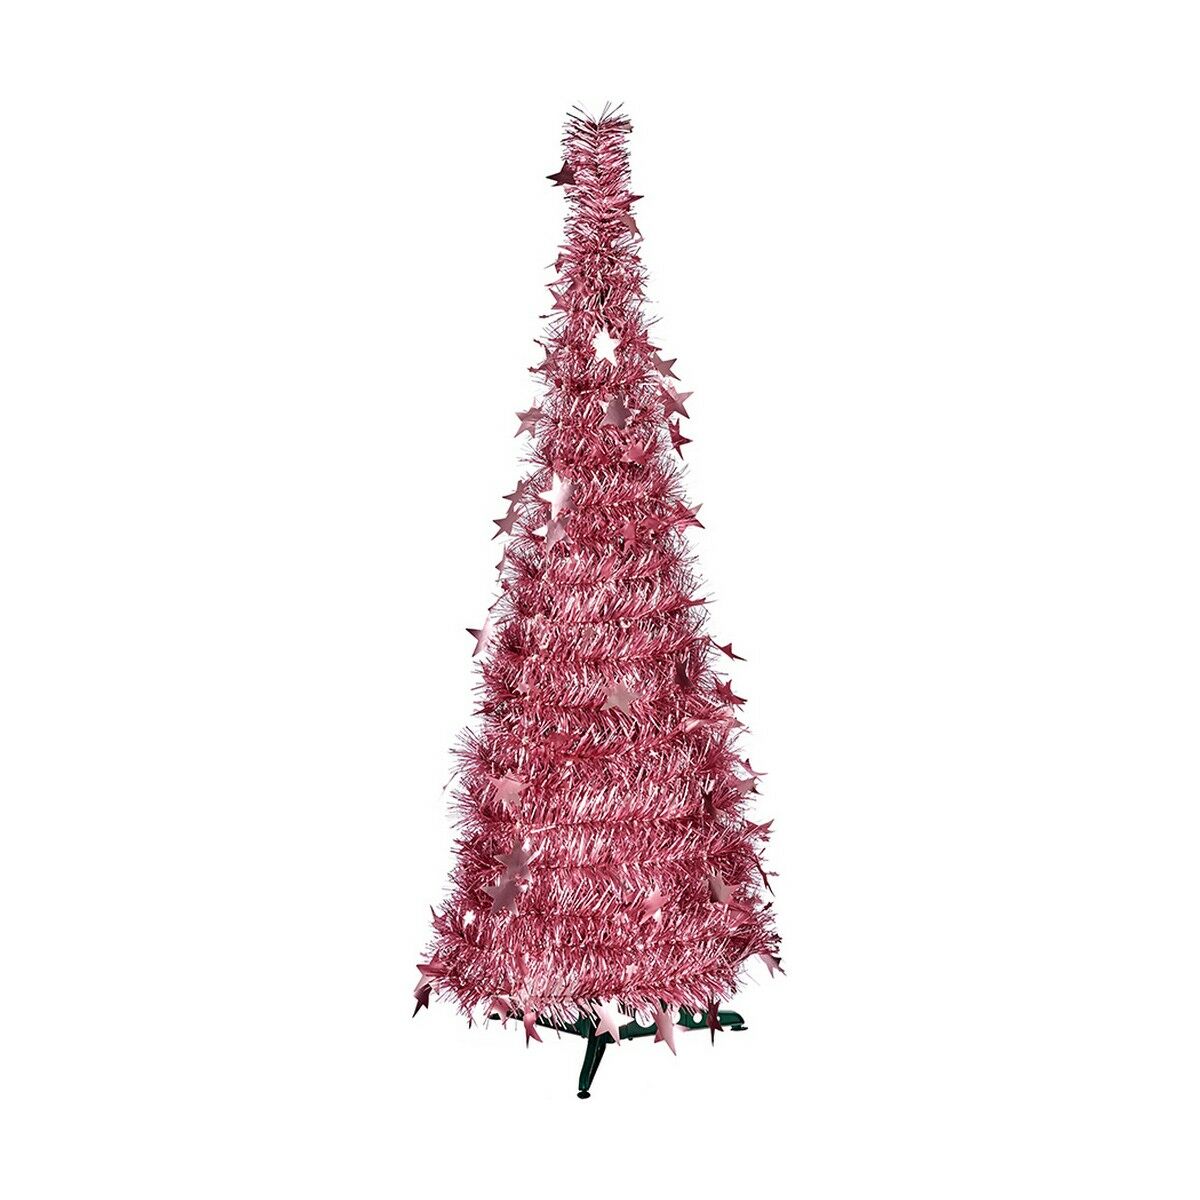 Christmas Tree Pink